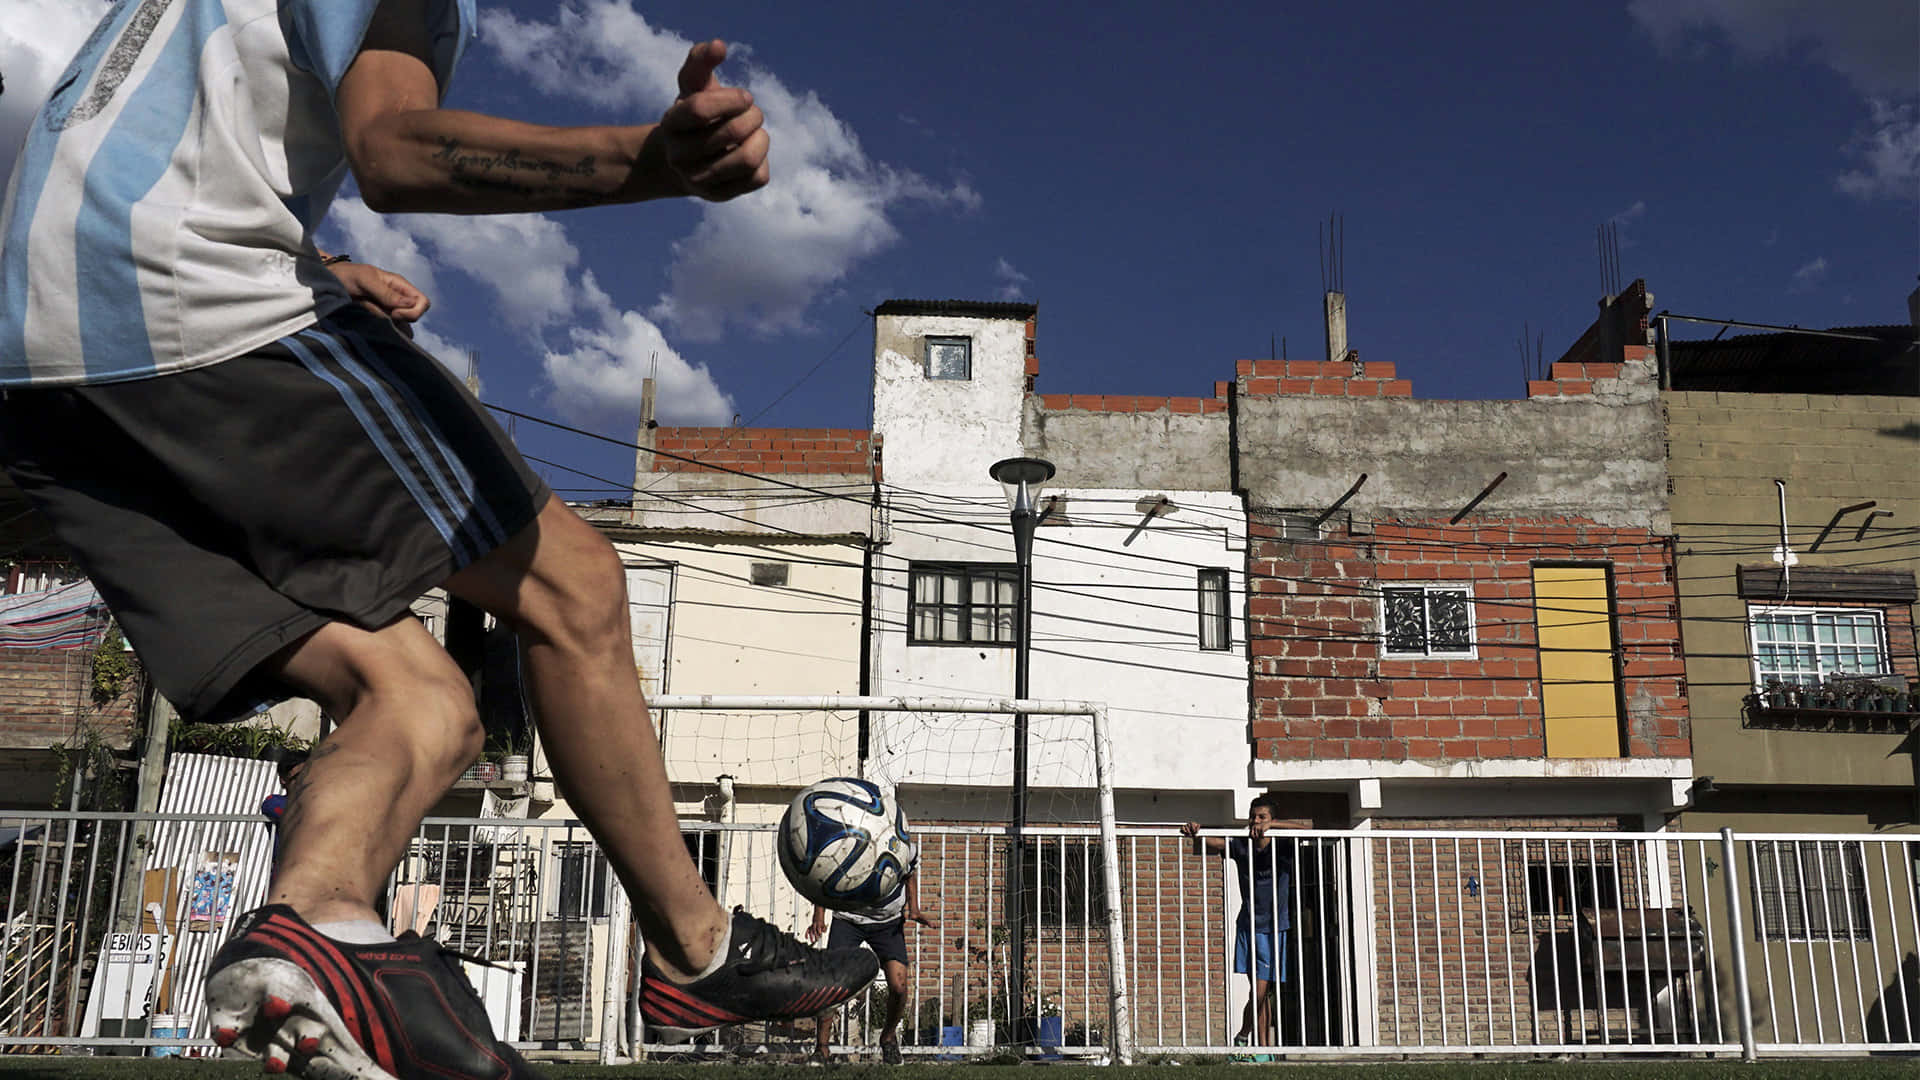 Urban Street Soccer Skills.jpg Wallpaper